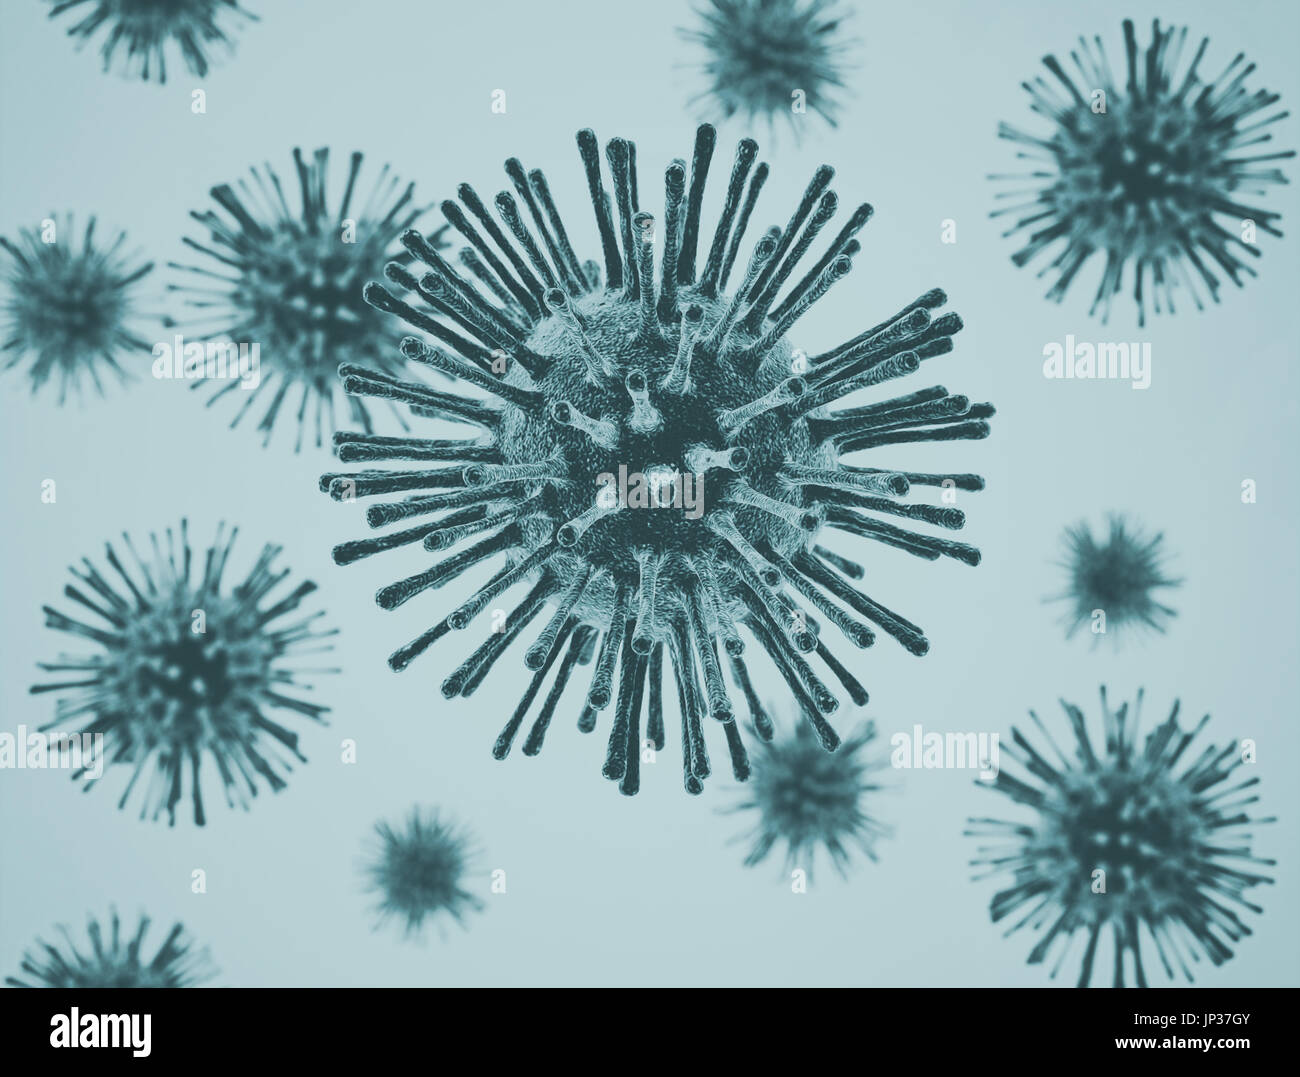 Virus cells illustration Stock Photo